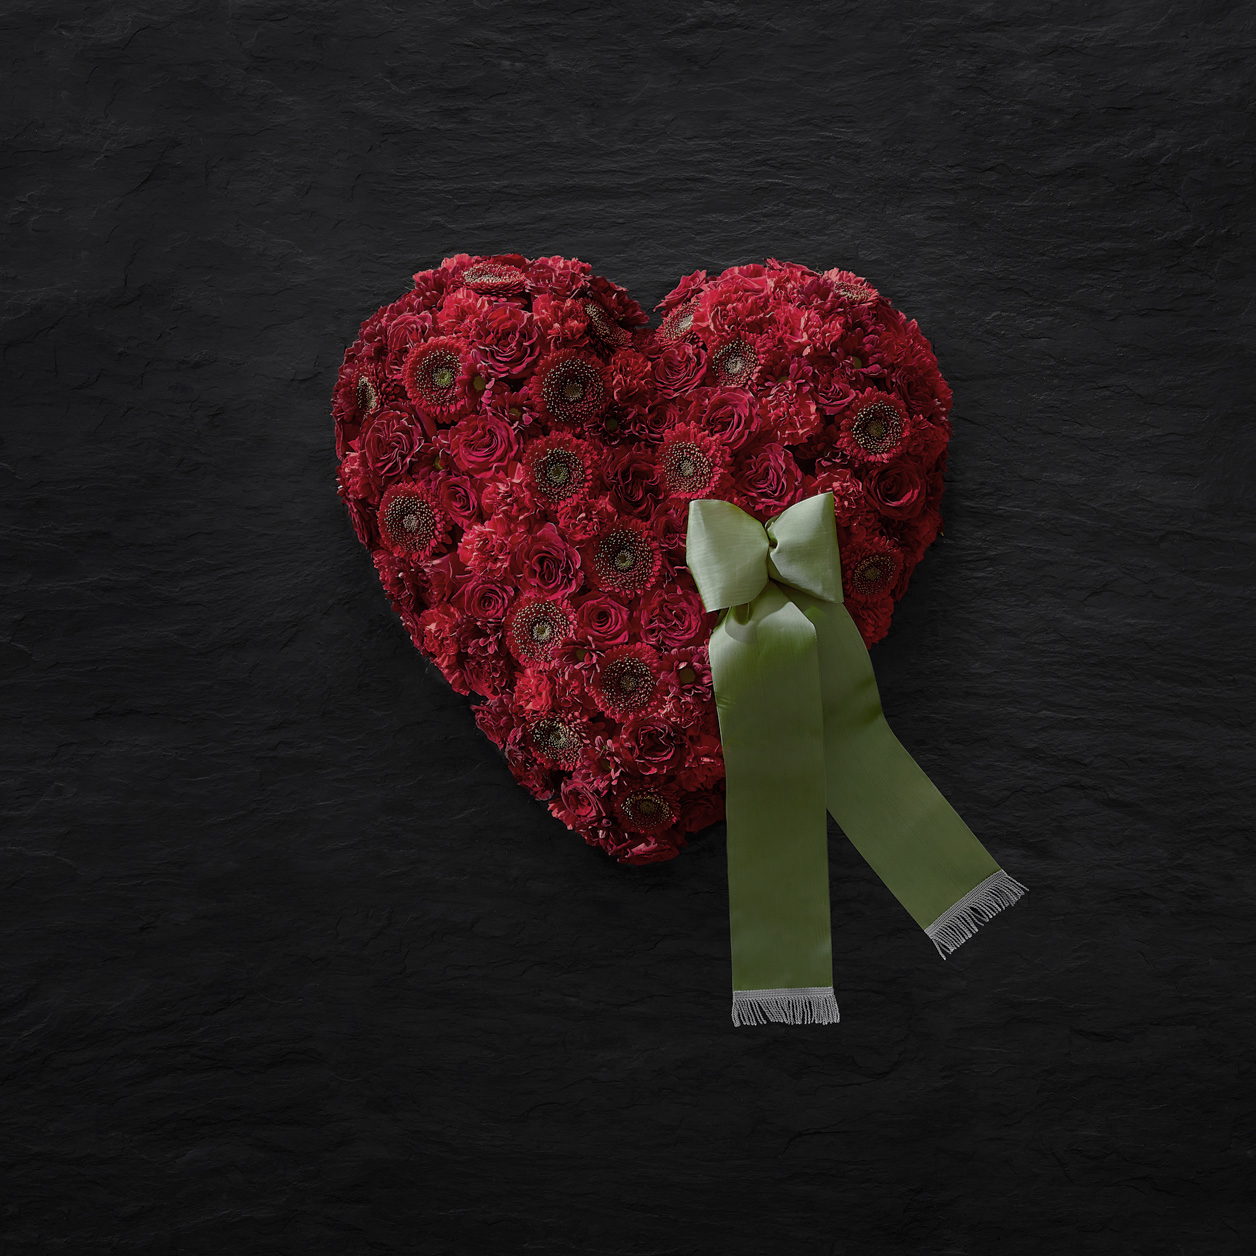 Ein rotes Blumenherz spricht für sich – es bringt die über den Tod hinaus fortwährende Liebe zu der Verstorbenen Person zum Ausdruck. Blumenherzen können ebenfalls mit einer Schleife versehen werden.